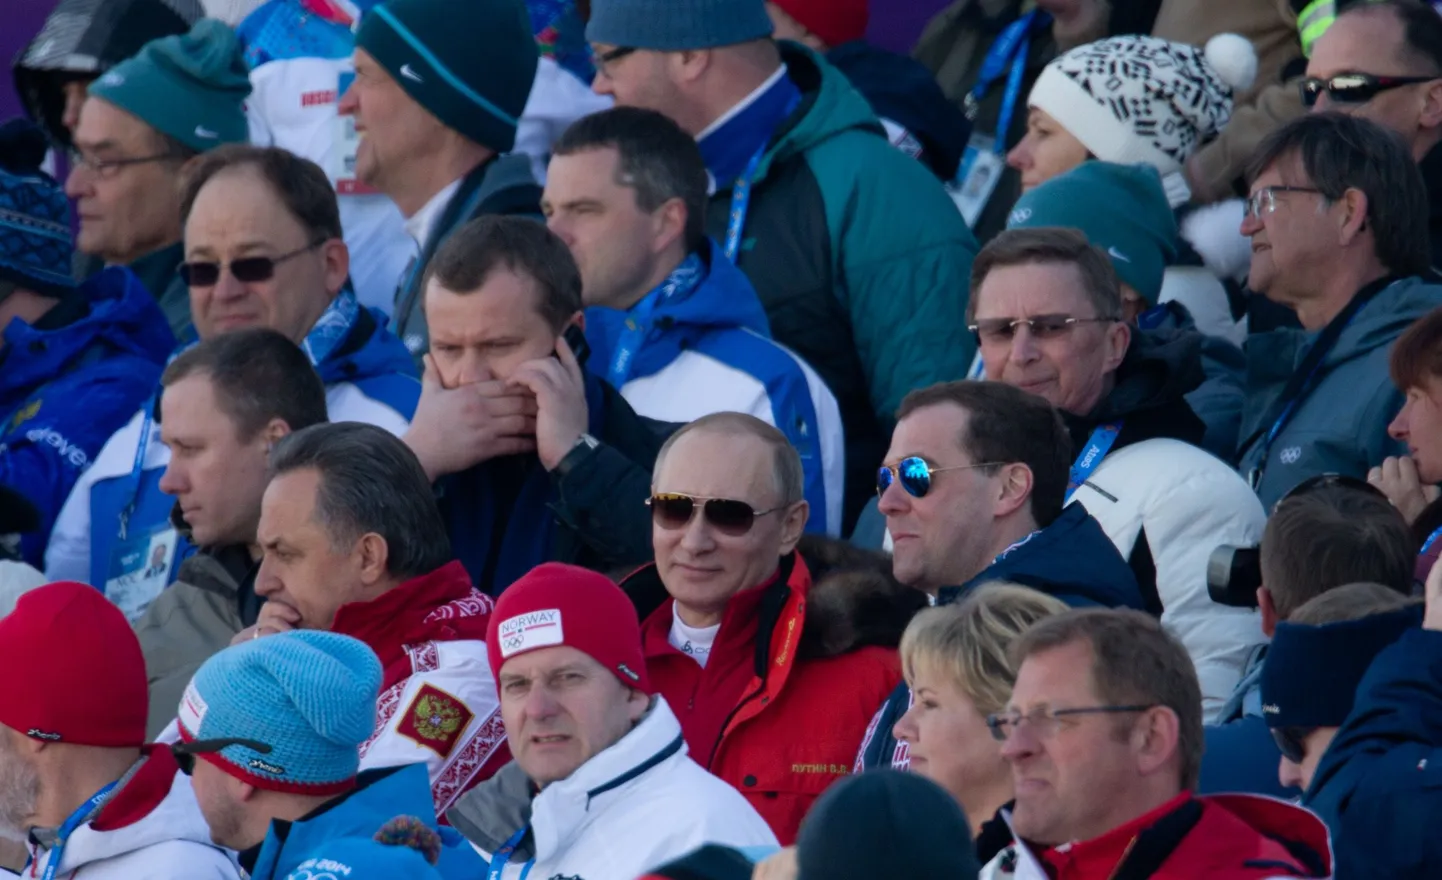 Президент ЭОК Нейнар Сели (в левом верхнем углу, в солнцезащитных очках) наблюдает с трибуны за воскресной мужской лыжной эстафетой рядом с Владимиром Путиным и премьером Дмитрием Медведевым (в центре).